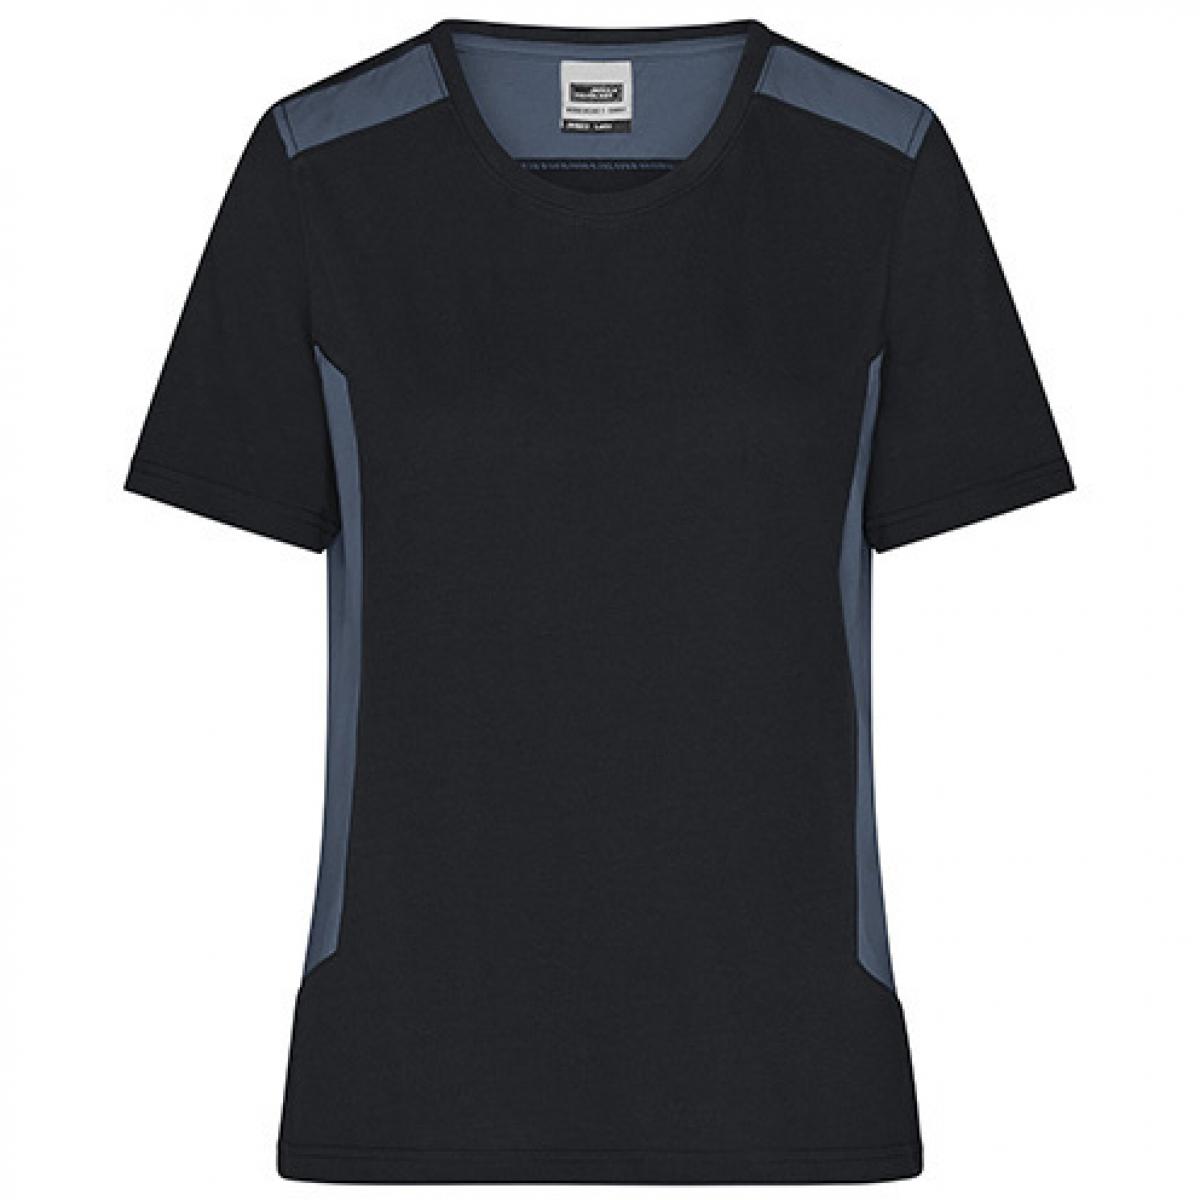 Hersteller: James+Nicholson Herstellernummer: JN1823 Artikelbezeichnung: Damen T, Ladies‘ Workwear T-Shirt -STRONG- Waschbar bis 60 ° Farbe: Black/Carbon